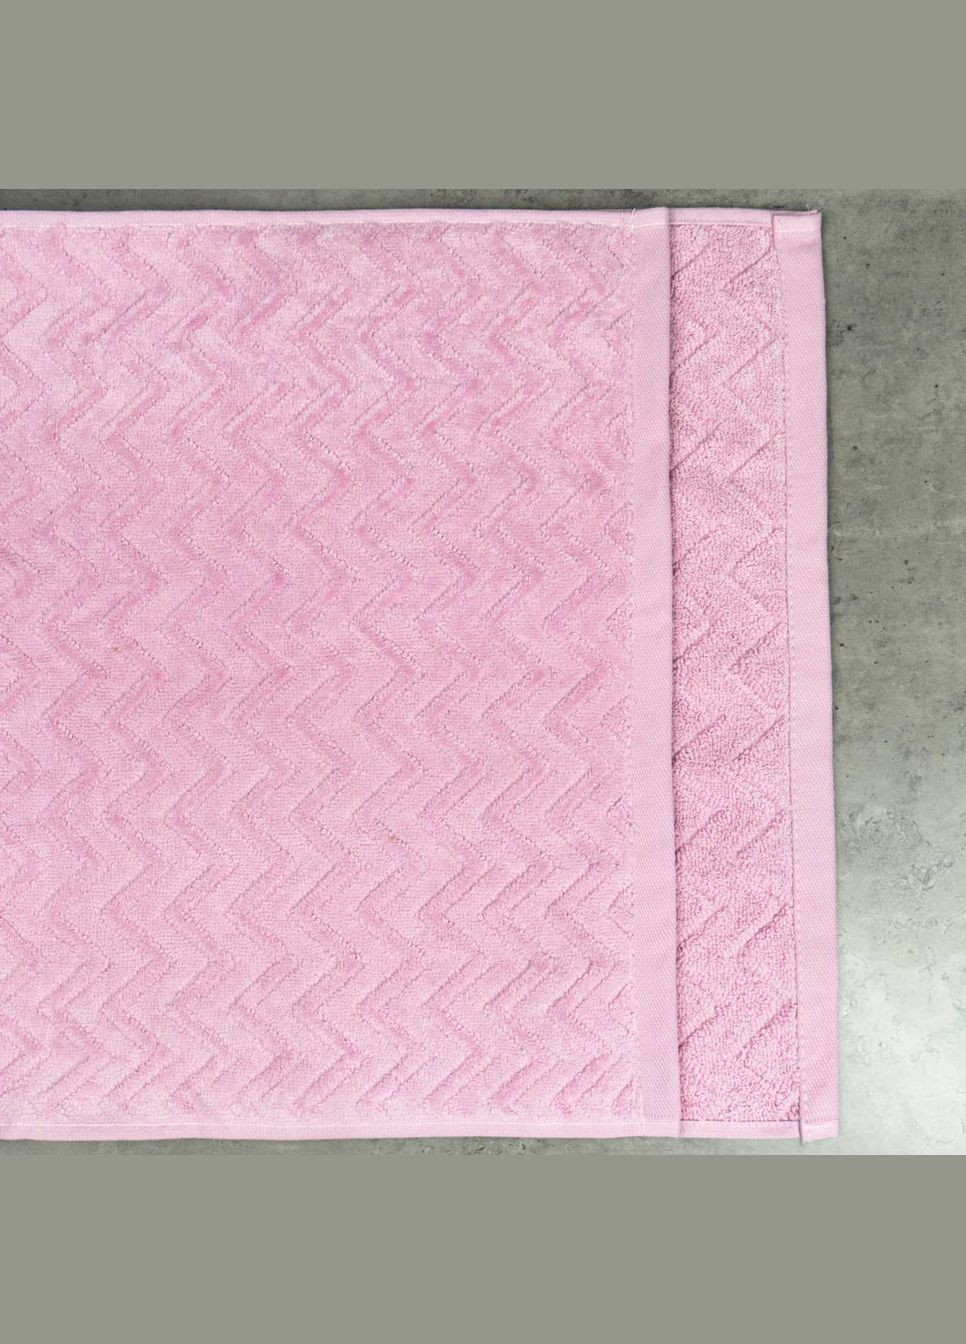 GM Textile набор махровых полотенец жаккардовых с велюром 2шт 50x90см, 70x140см 550г/м2 () розовый производство -